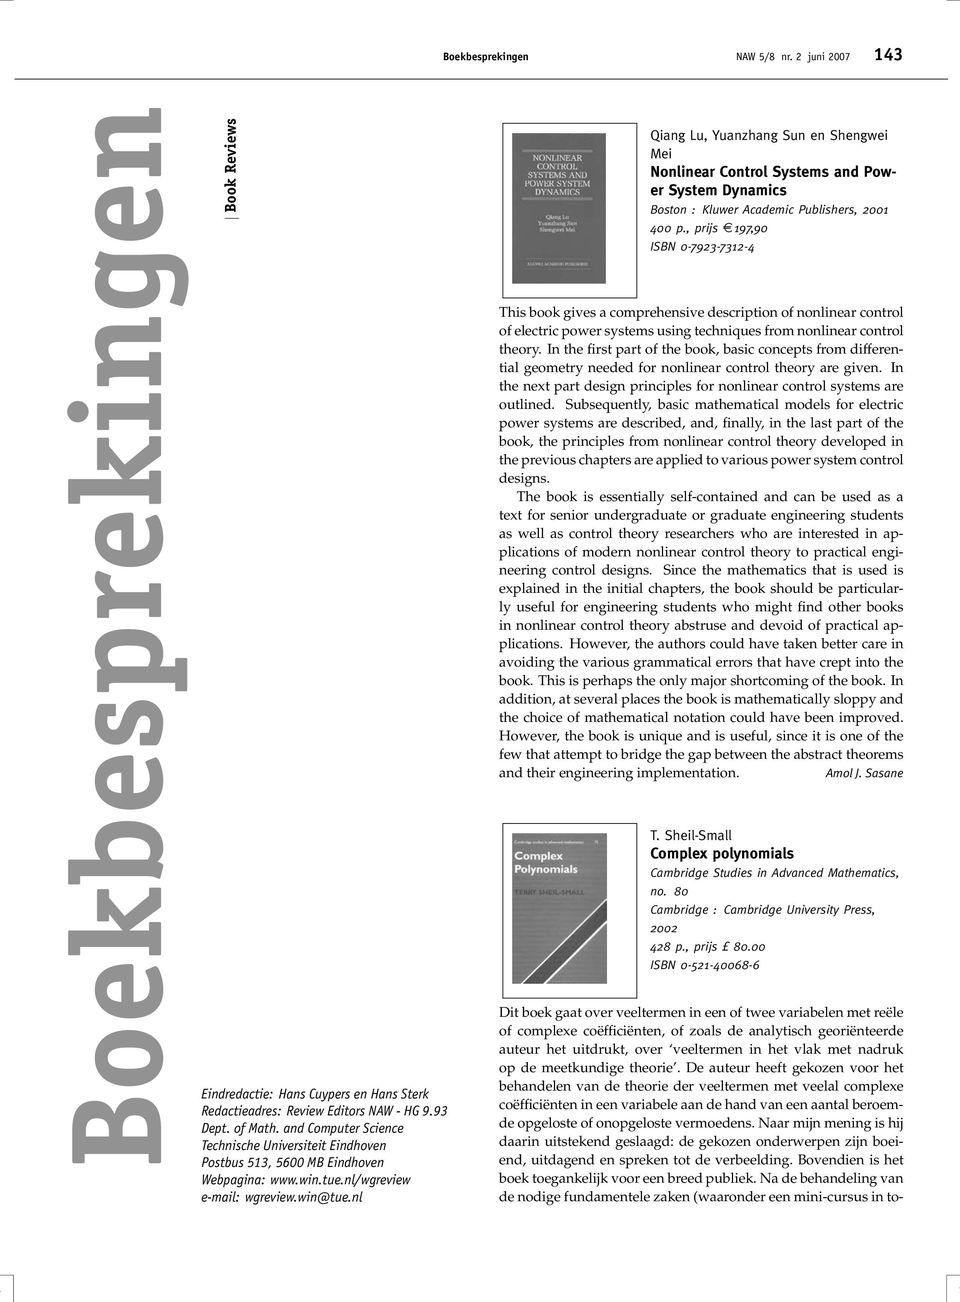 nl Qiang Lu, Yuanzhang Sun en Shengwei Mei Nonlinear Control Systems and Power System Dynamics Boston : Kluwer Academic Publishers, 2001 400 p.